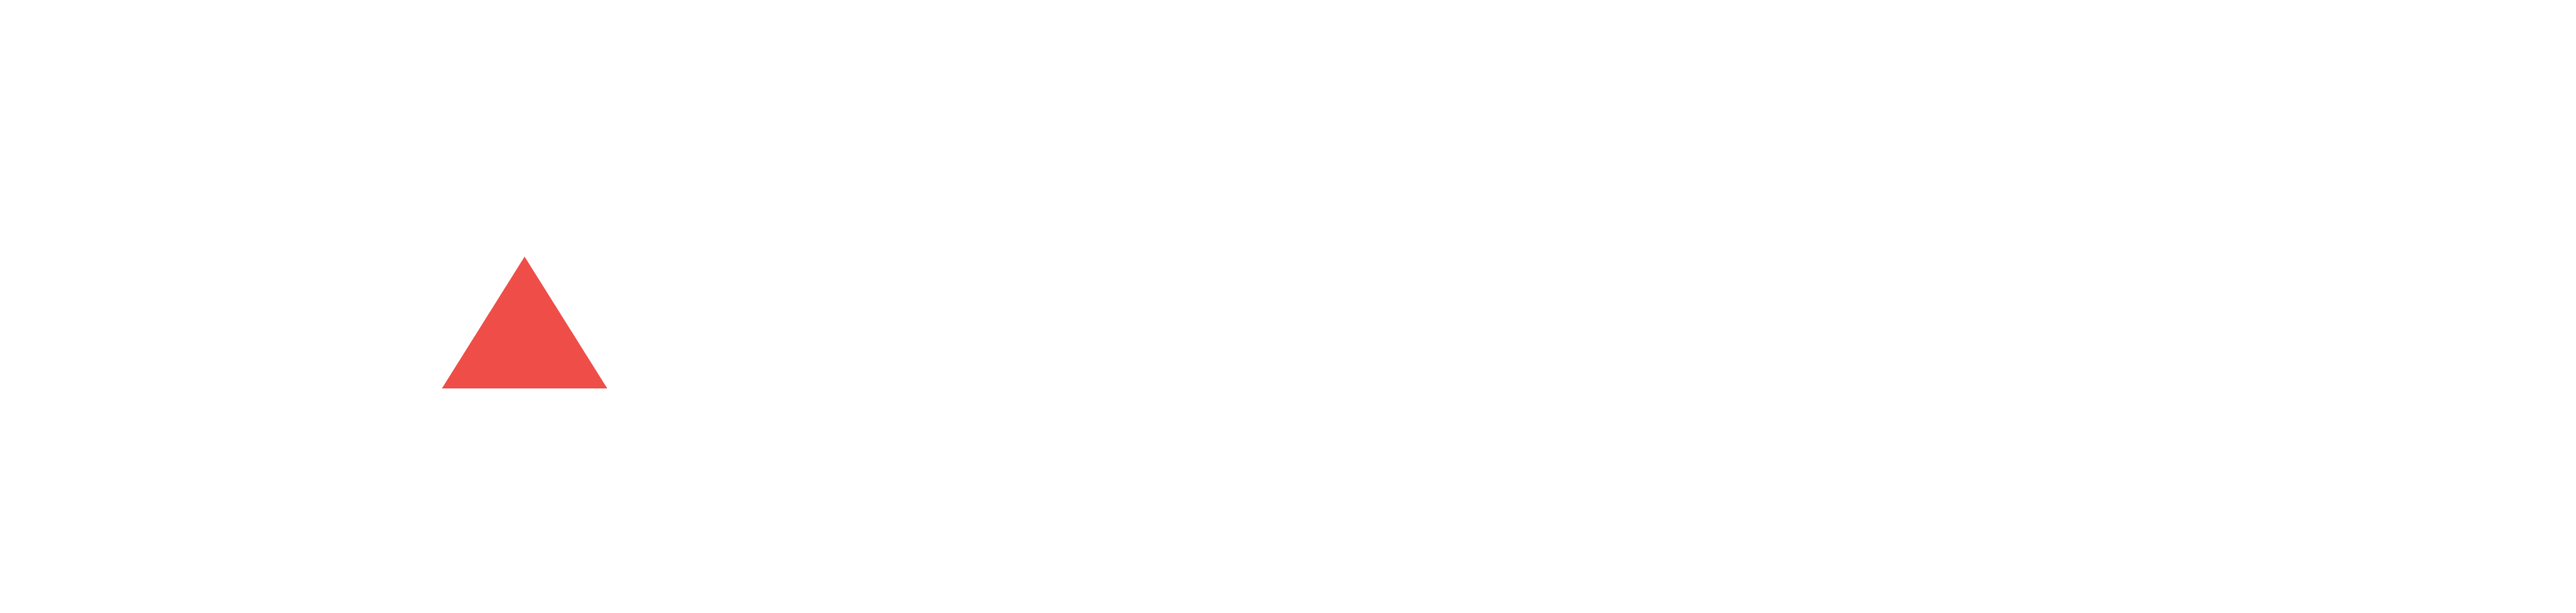 Ads Digitech Solutions